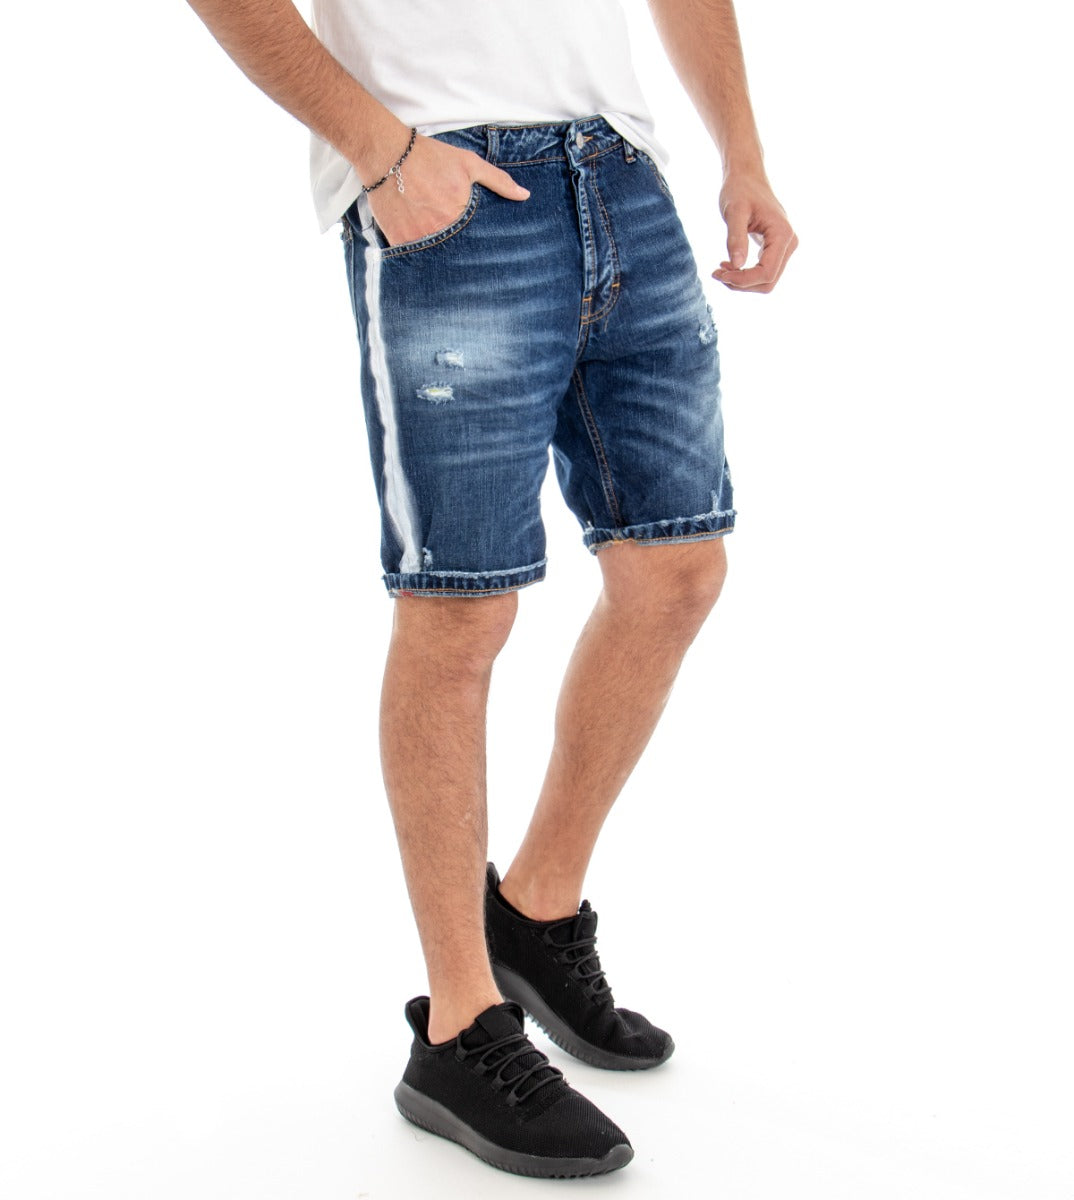 Bermuda Pantaloncino Jeans Uomo Denim Riga Laterale Slim Cinque Tasche GIOSAL-PC1336A